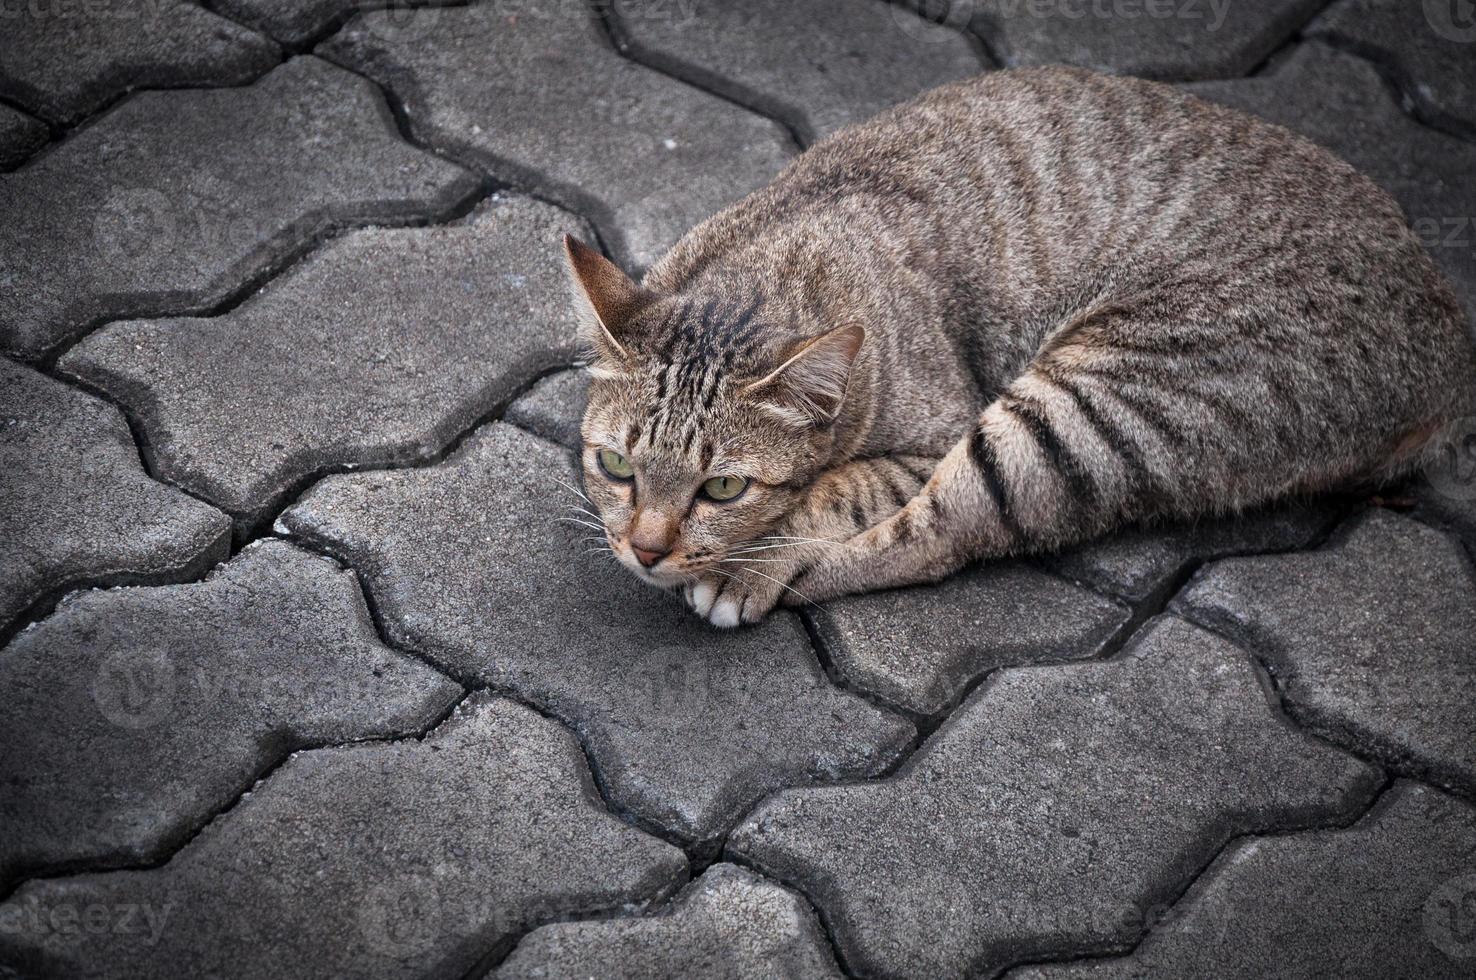 gato atigrado soñoliento en el suelo, gato lindo marrón, gato acostado, vacaciones relajantes de gato juguetón, formato vertical, enfoque selectivo foto